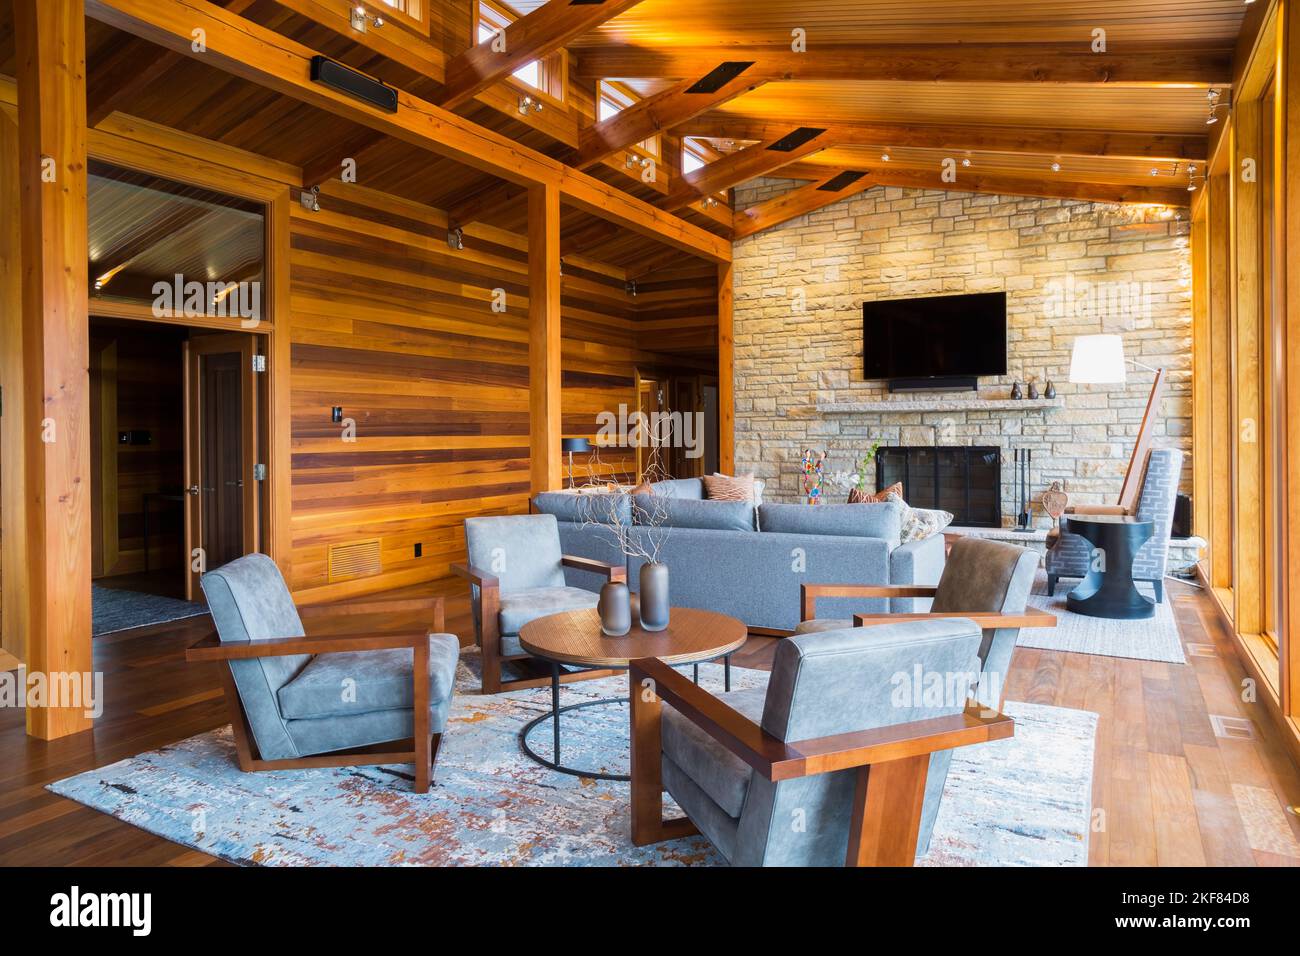 Fauteuils rembourrés en bois brun et gris, table ronde et canapés avec cheminée en pierre naturelle dans la salle de séjour à l'intérieur d'une maison en bois de cèdre. Banque D'Images